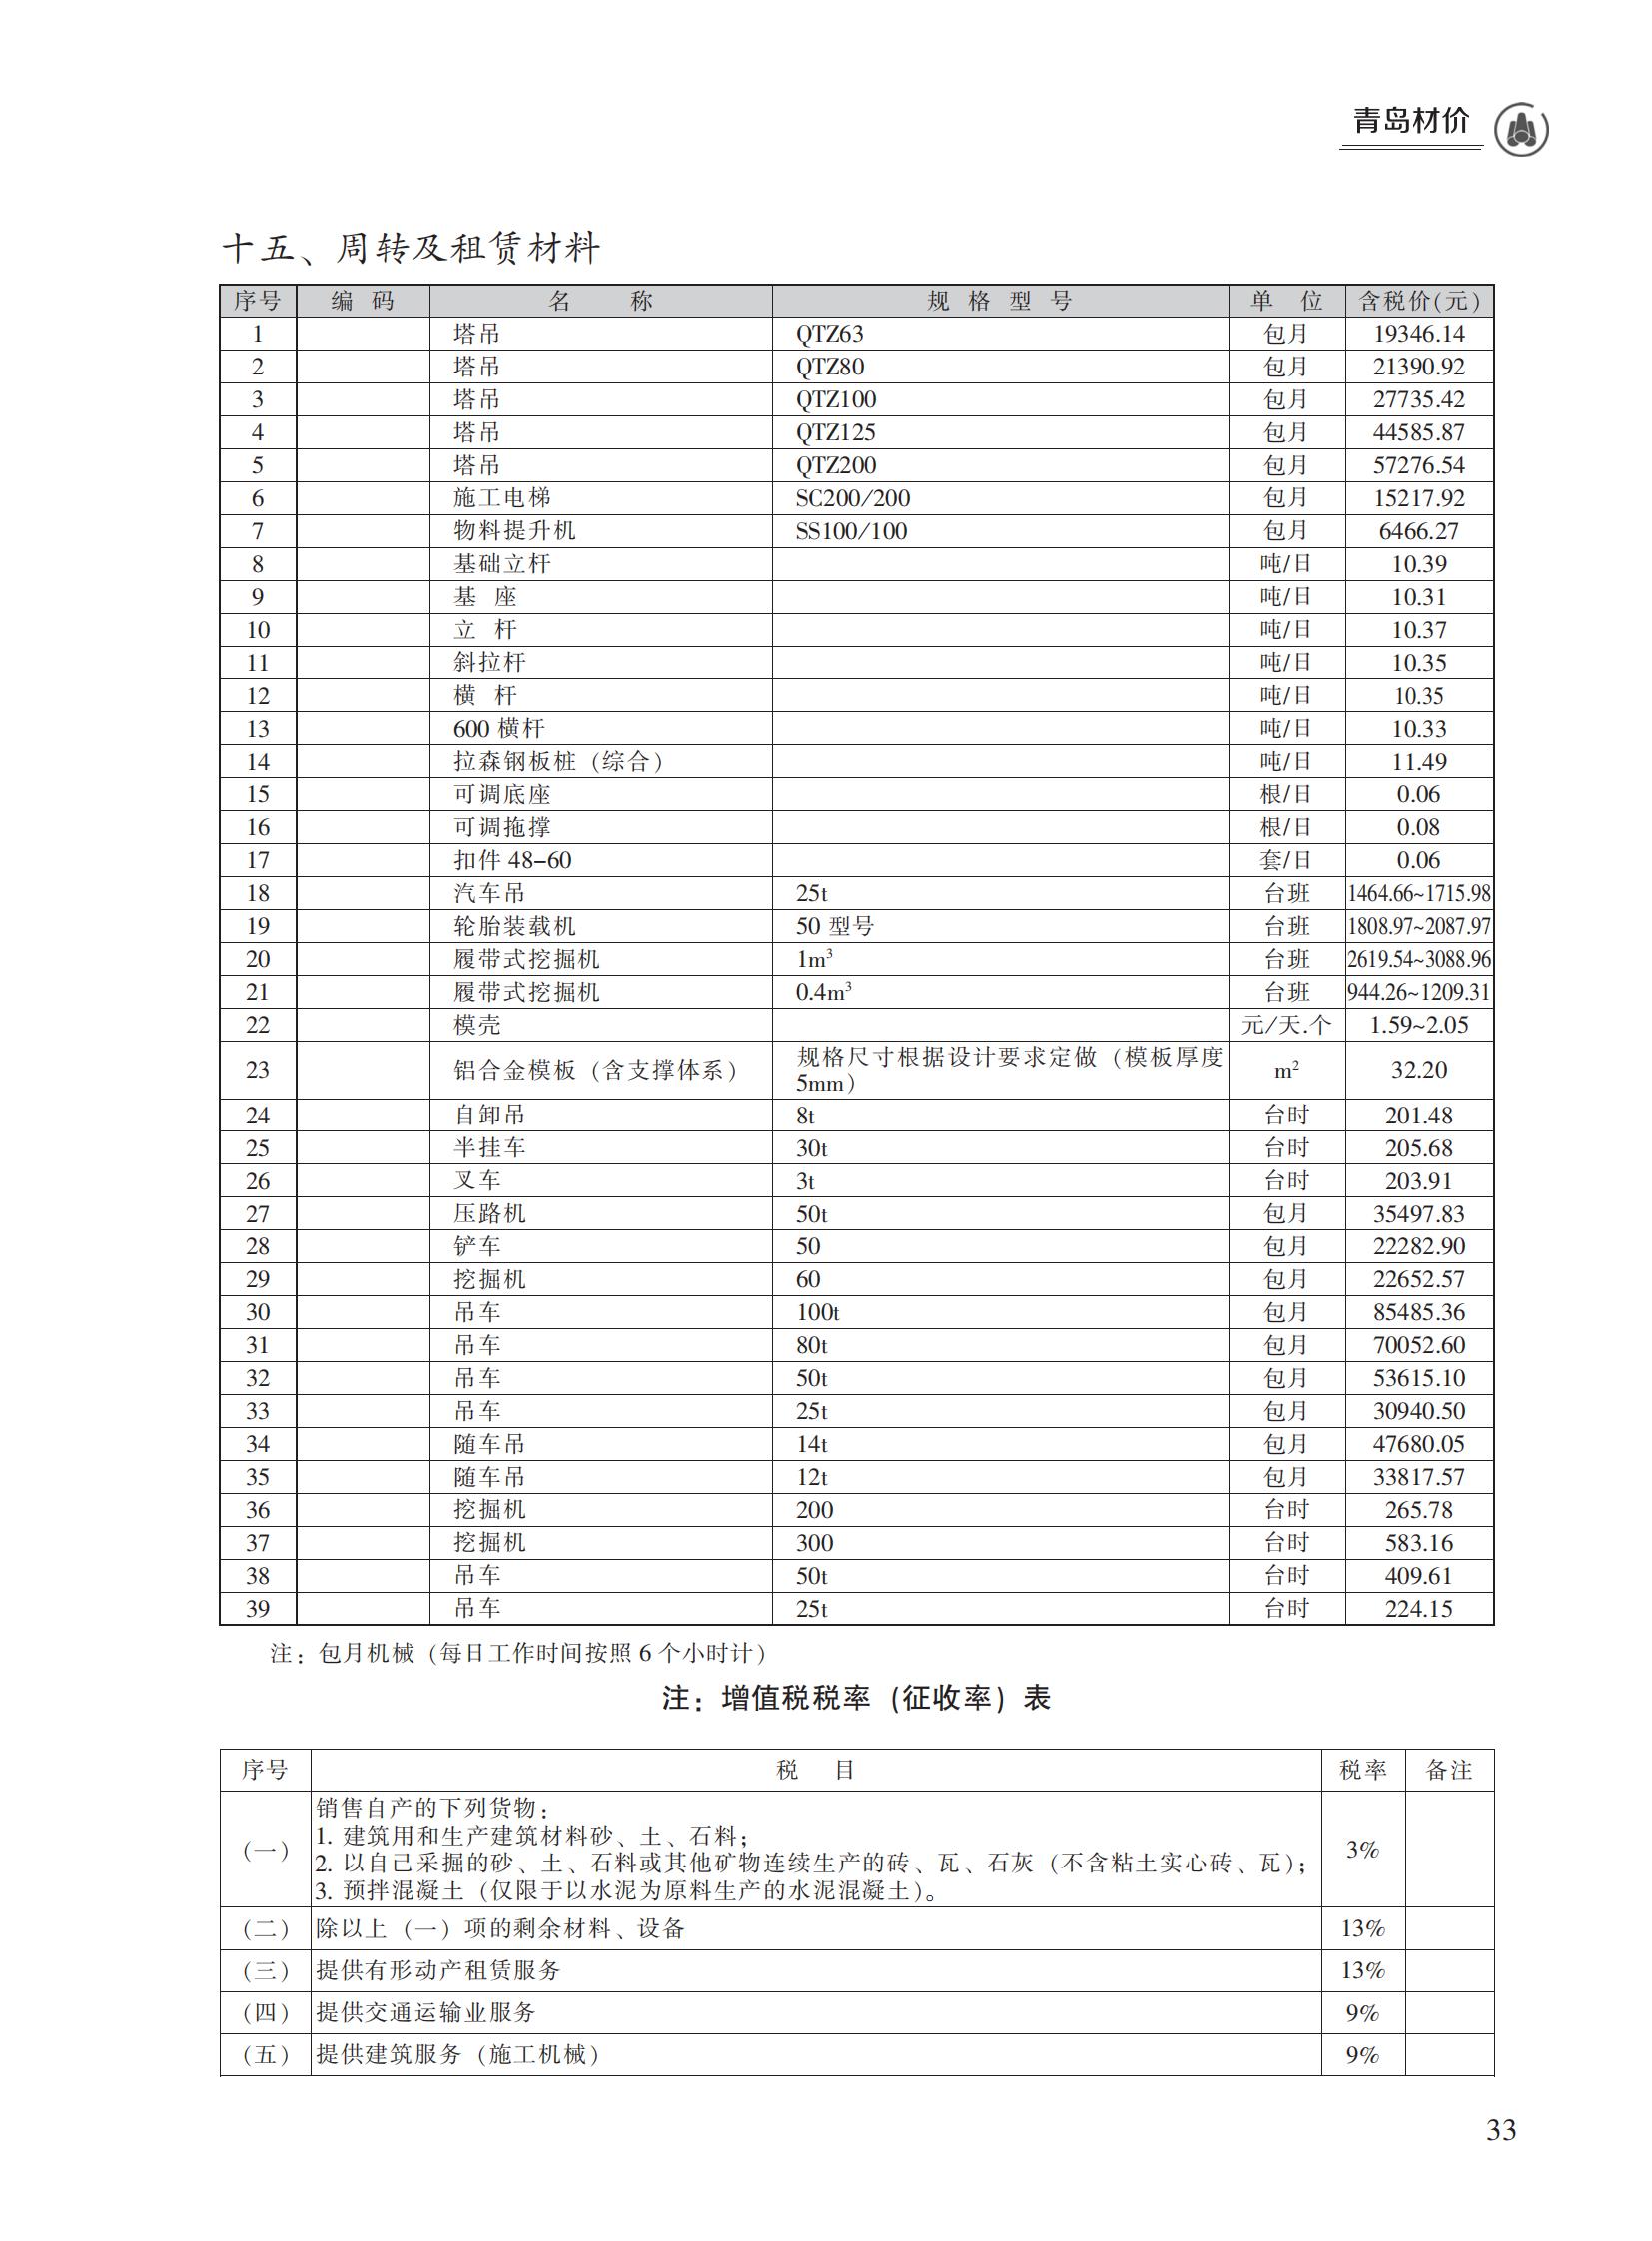 2023年1月青岛市建设工程材料价格及造价指数_32.jpg